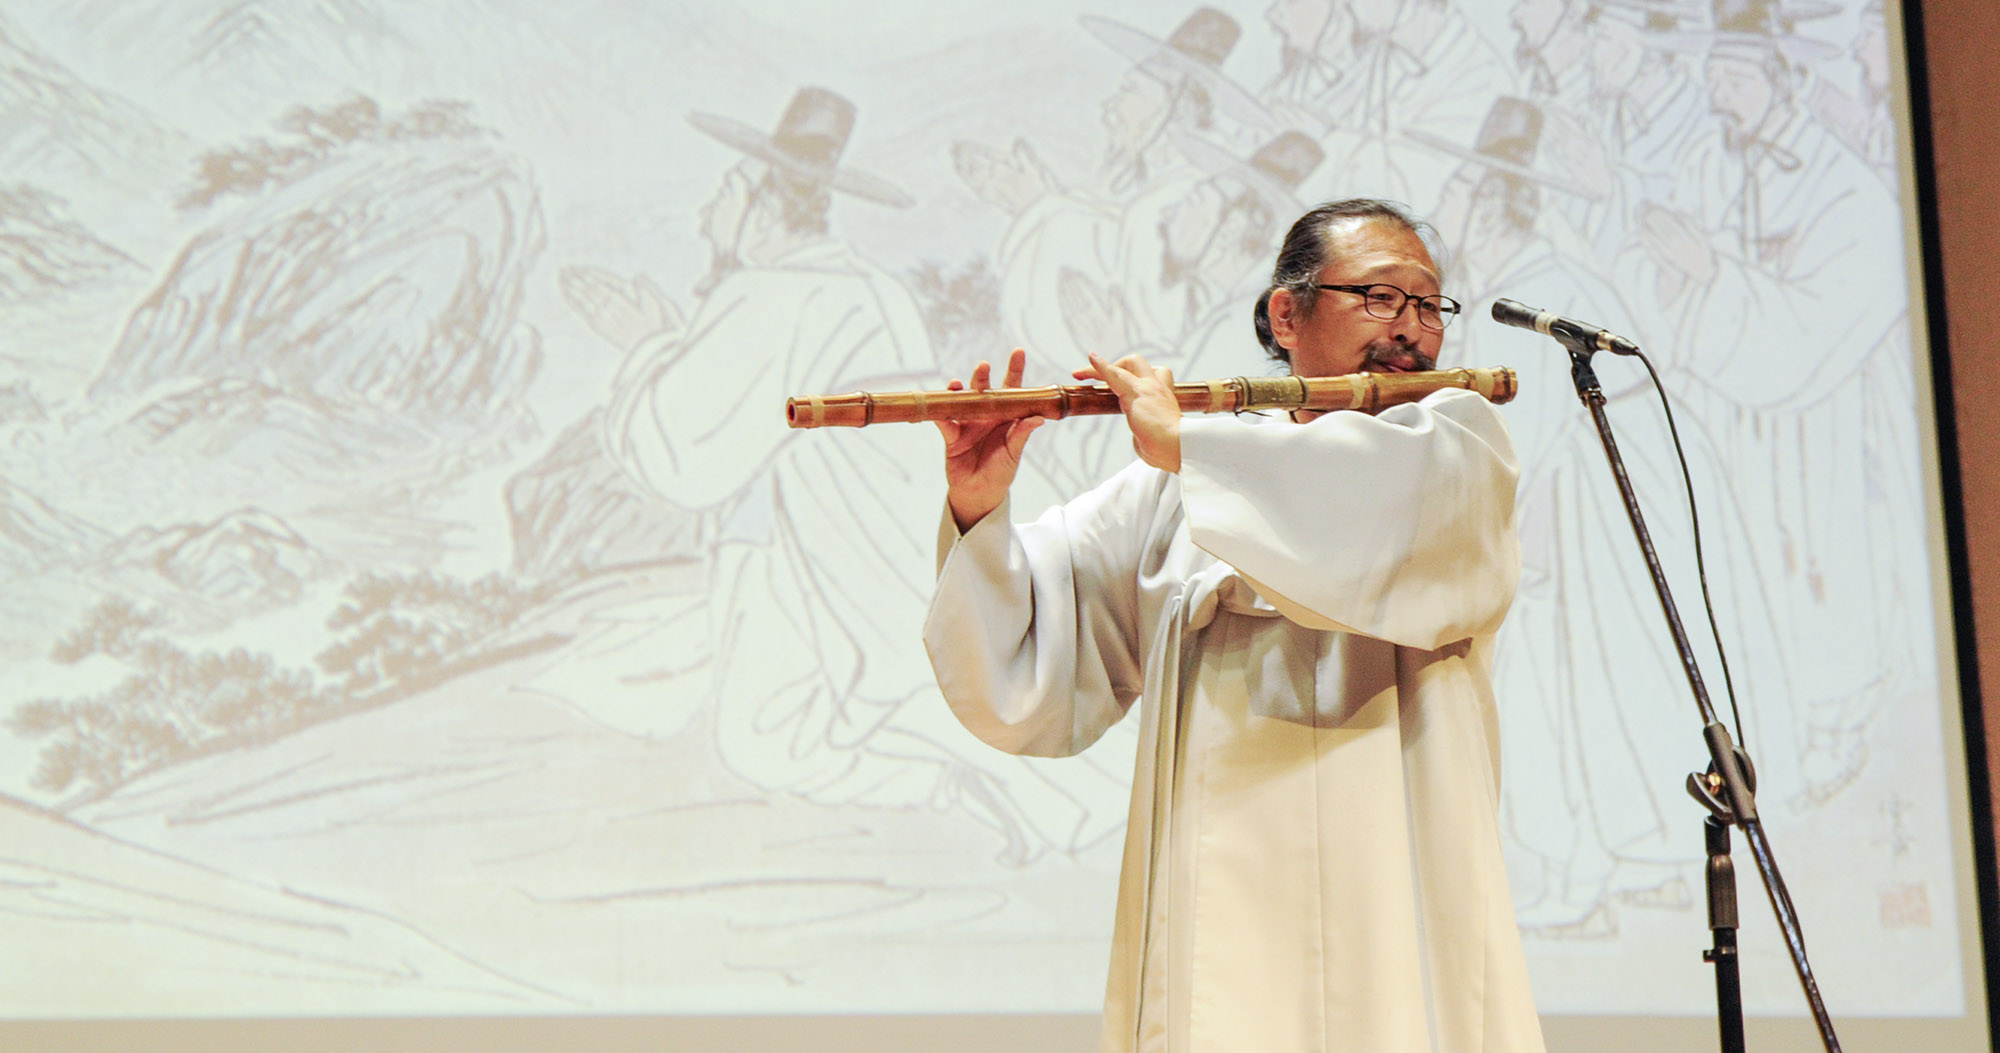 한국의 얼, 한국의 예술로 함께한 가톨릭 문화의 밤